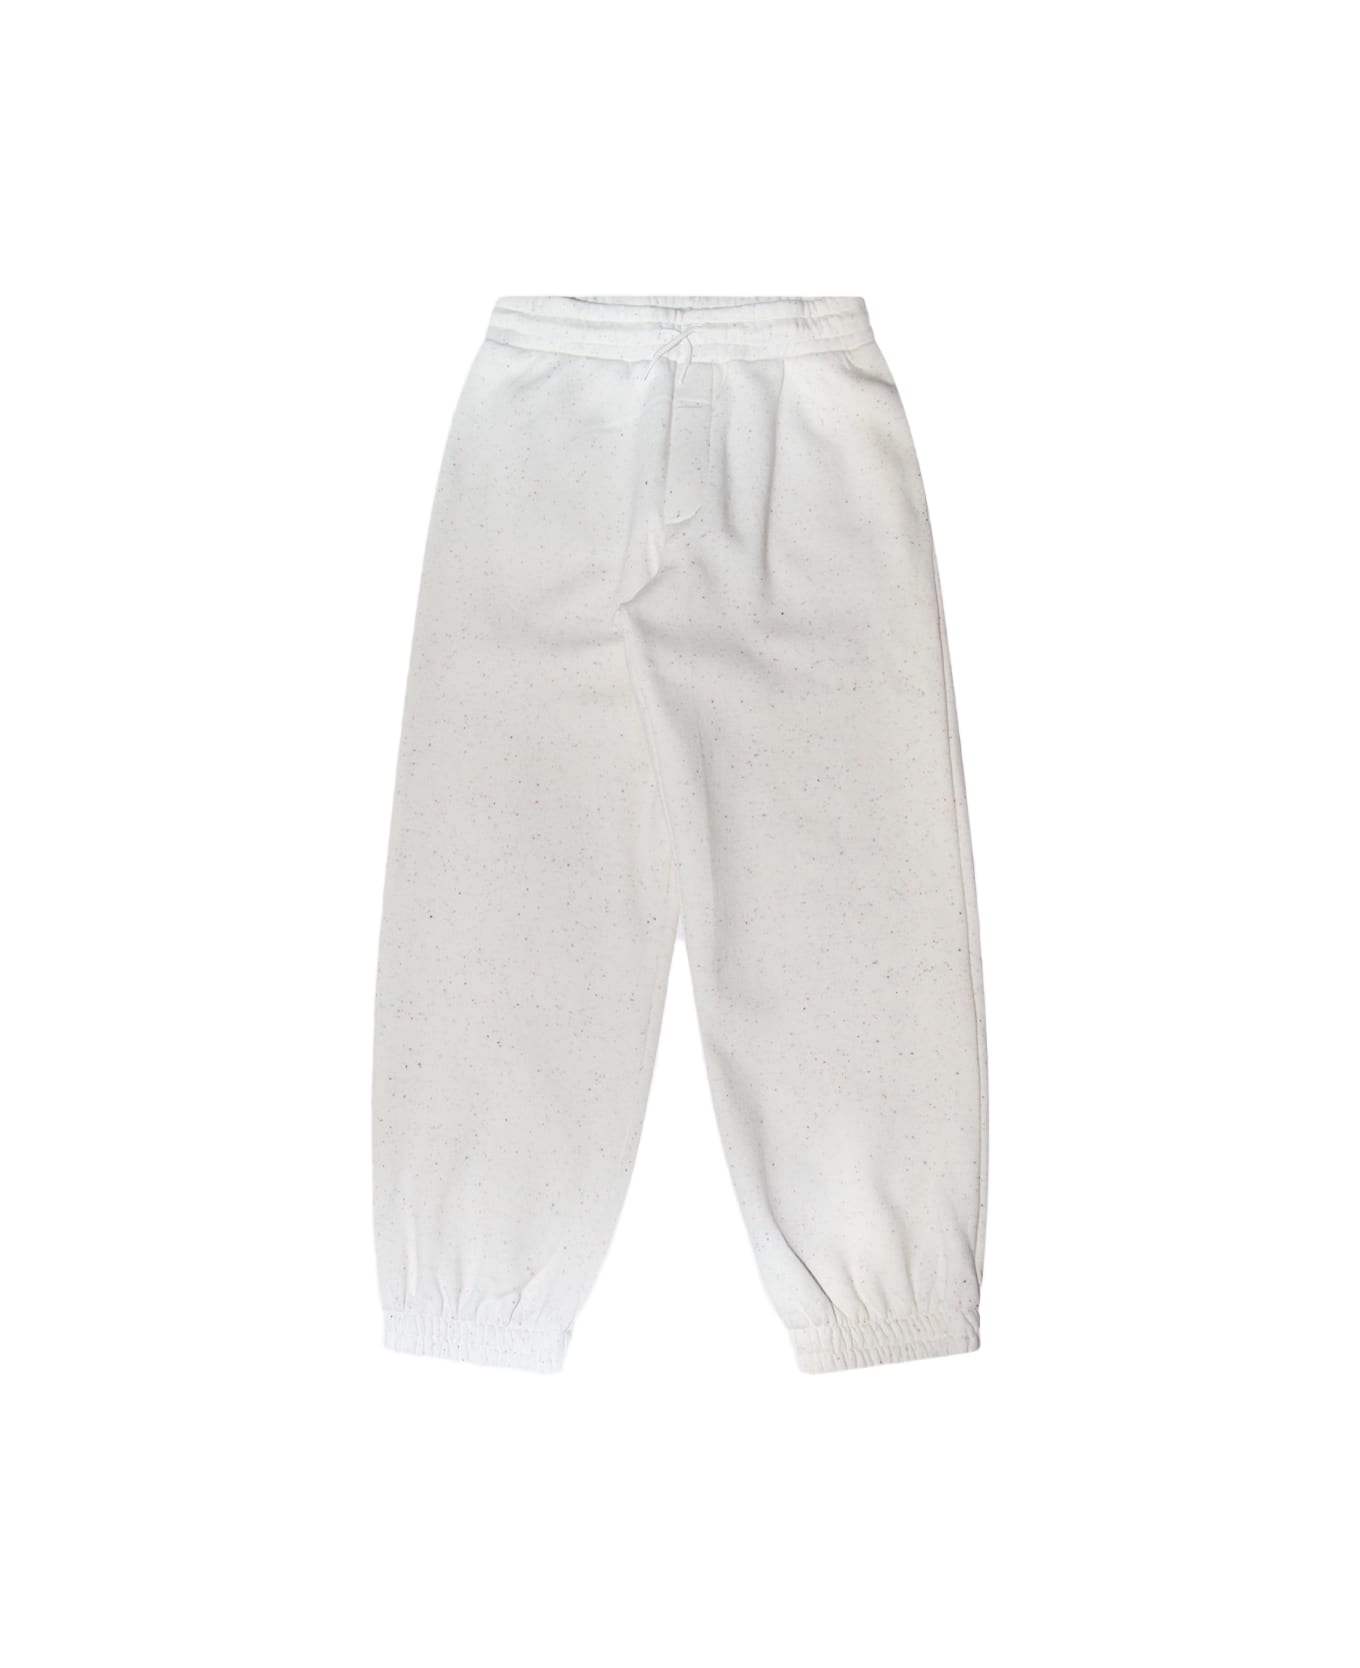 Kenzo Wicker Cotton Blend Track Pants - Wicker